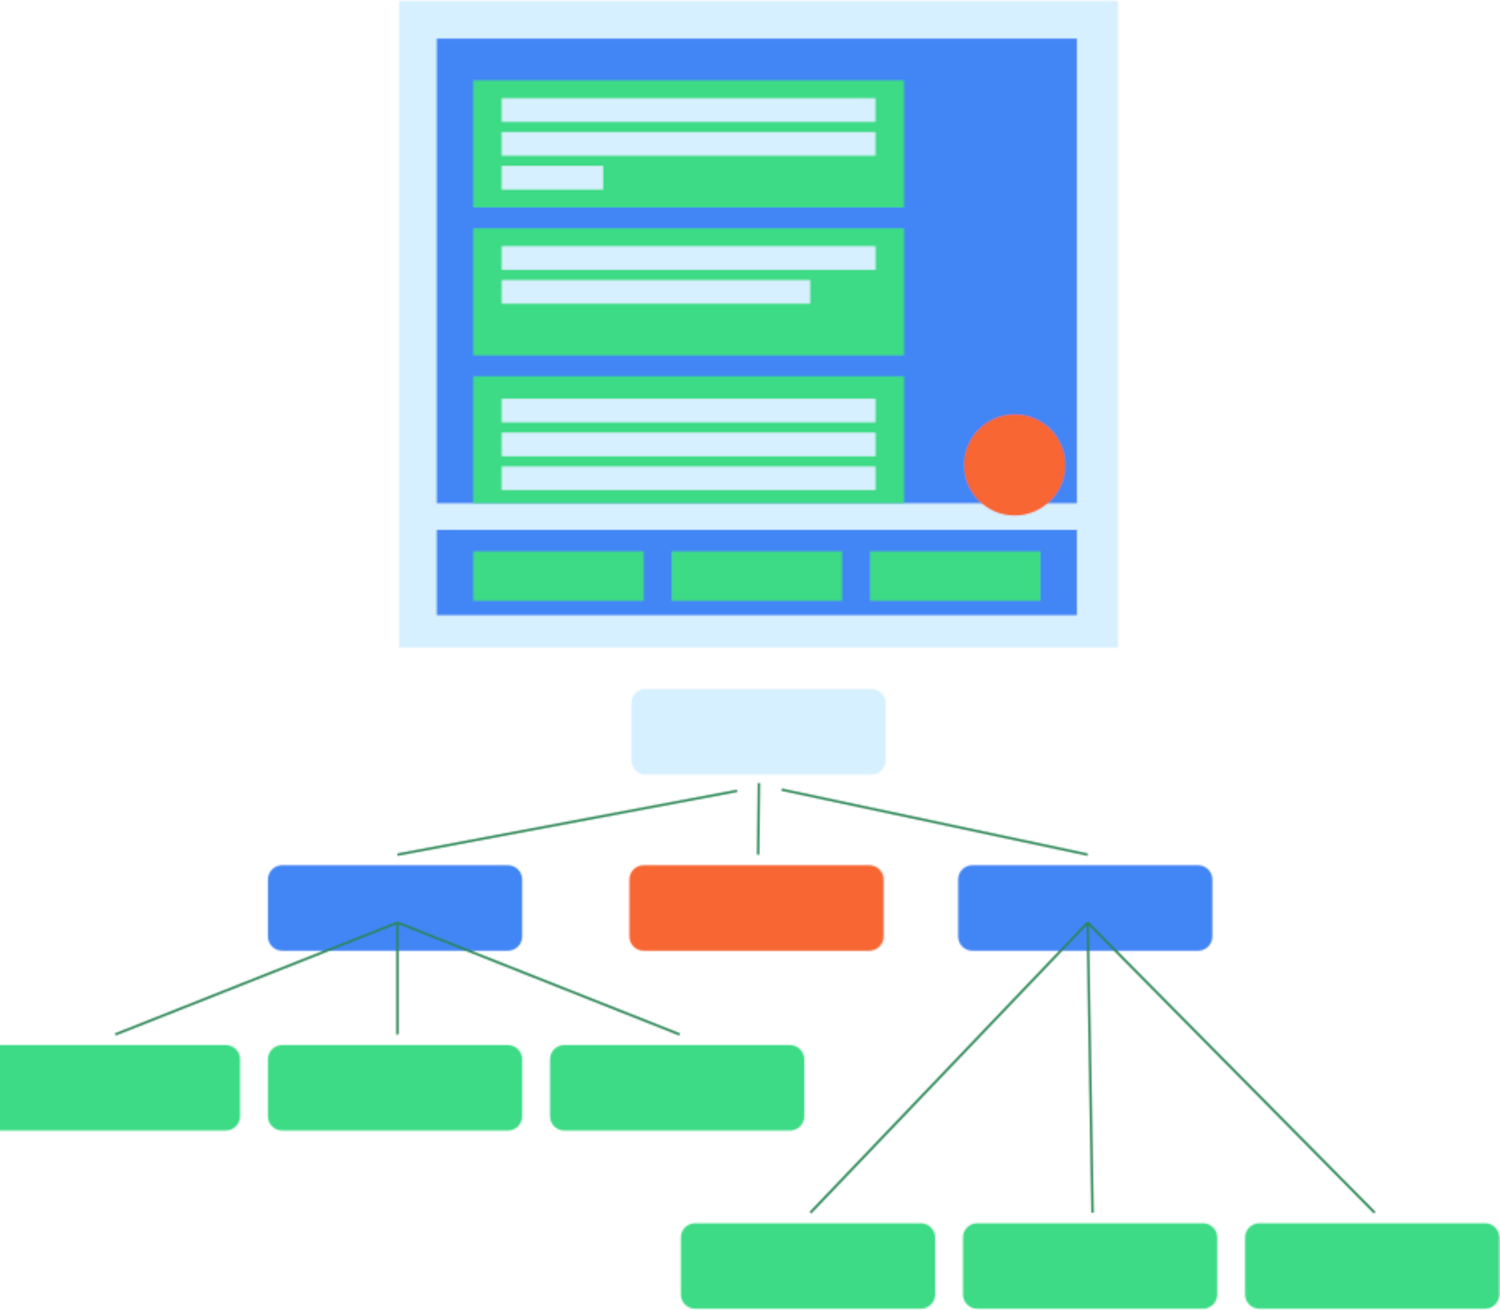 Diagramm, das ein typisches UI-Layout und die Art und Weise zeigt, wie dieses Layout einem entsprechenden semantischen Baum zugeordnet wird